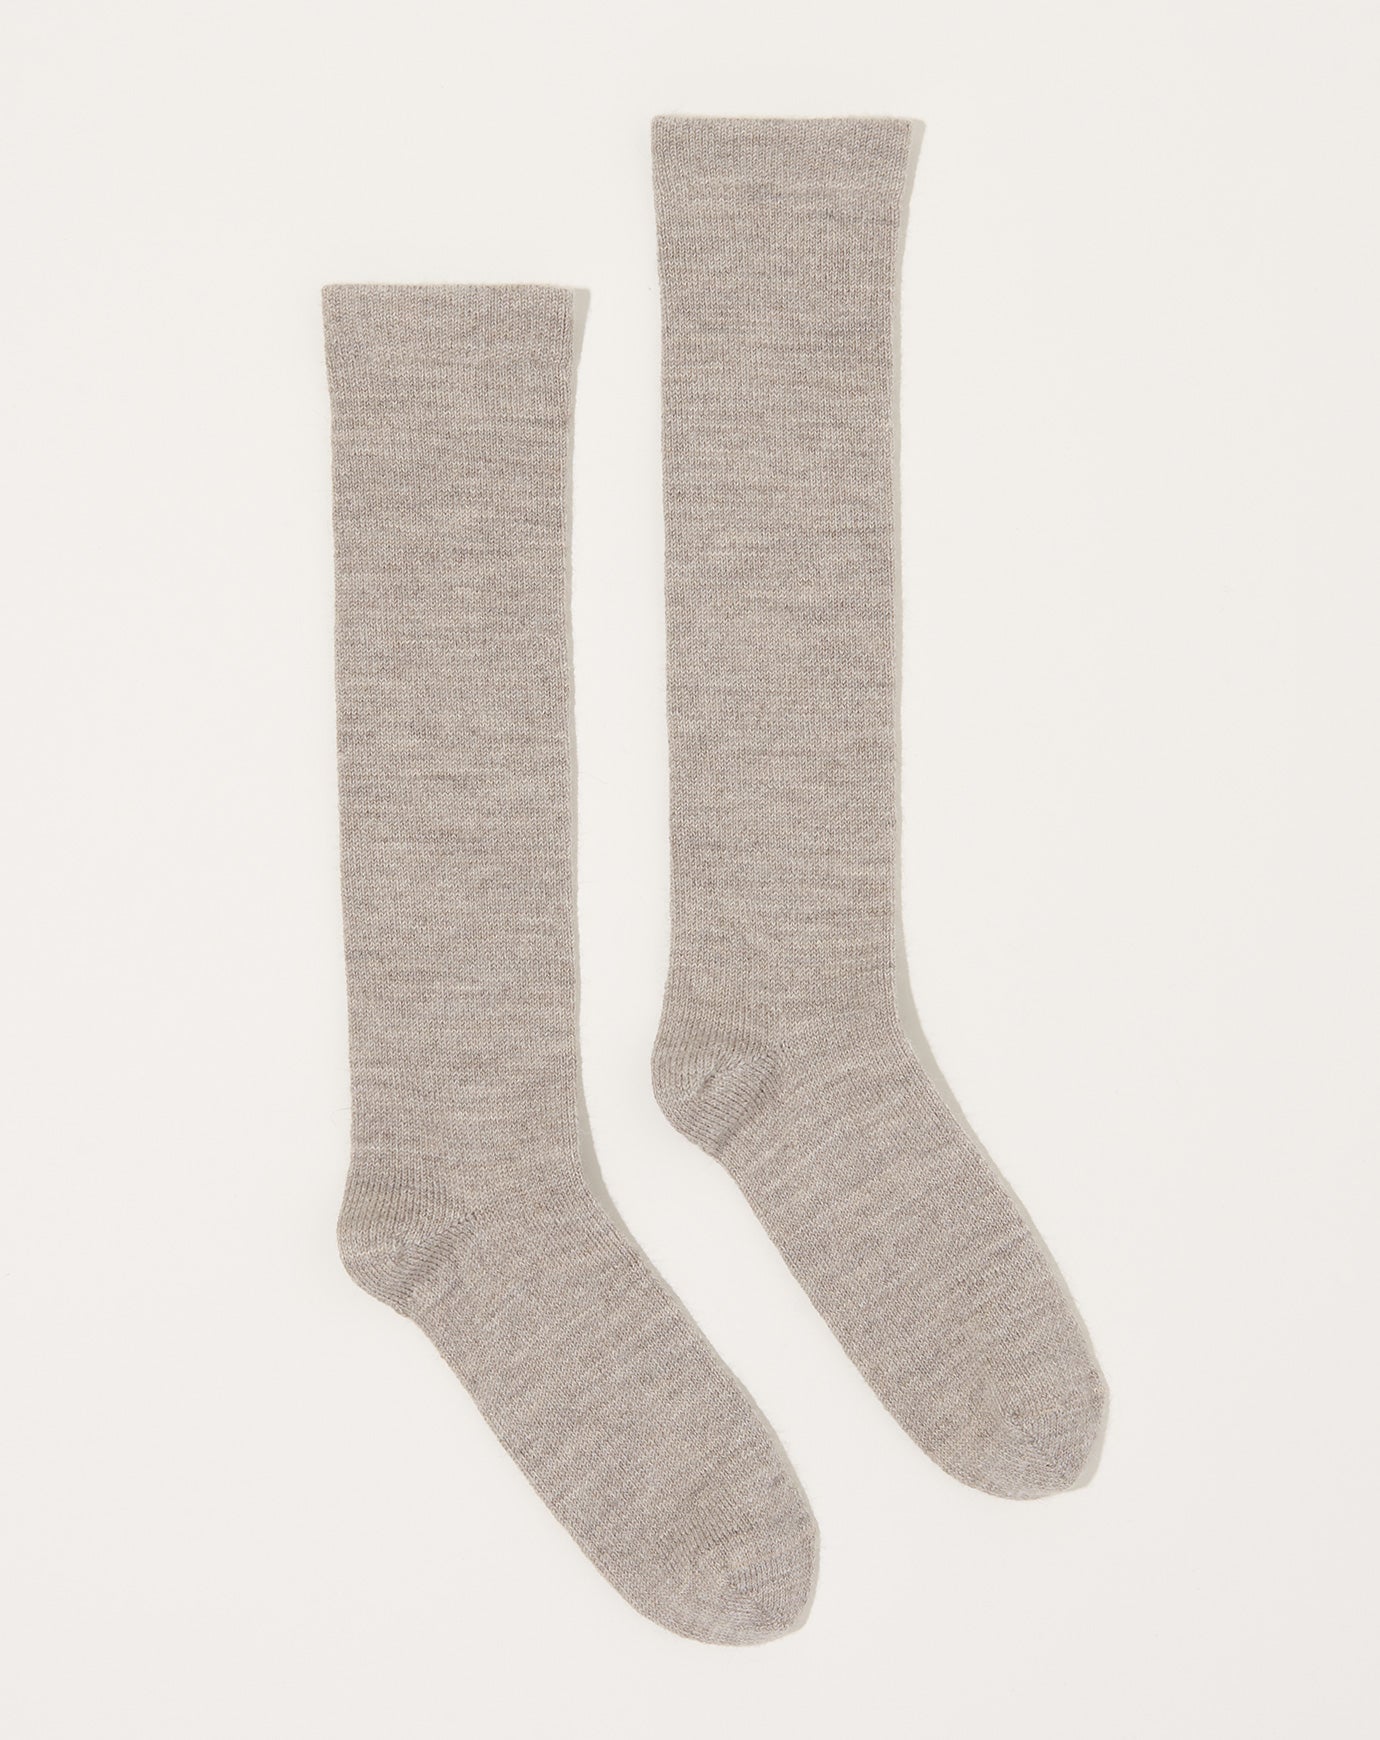 Lauren Manoogian Tall Sock Set in Mix